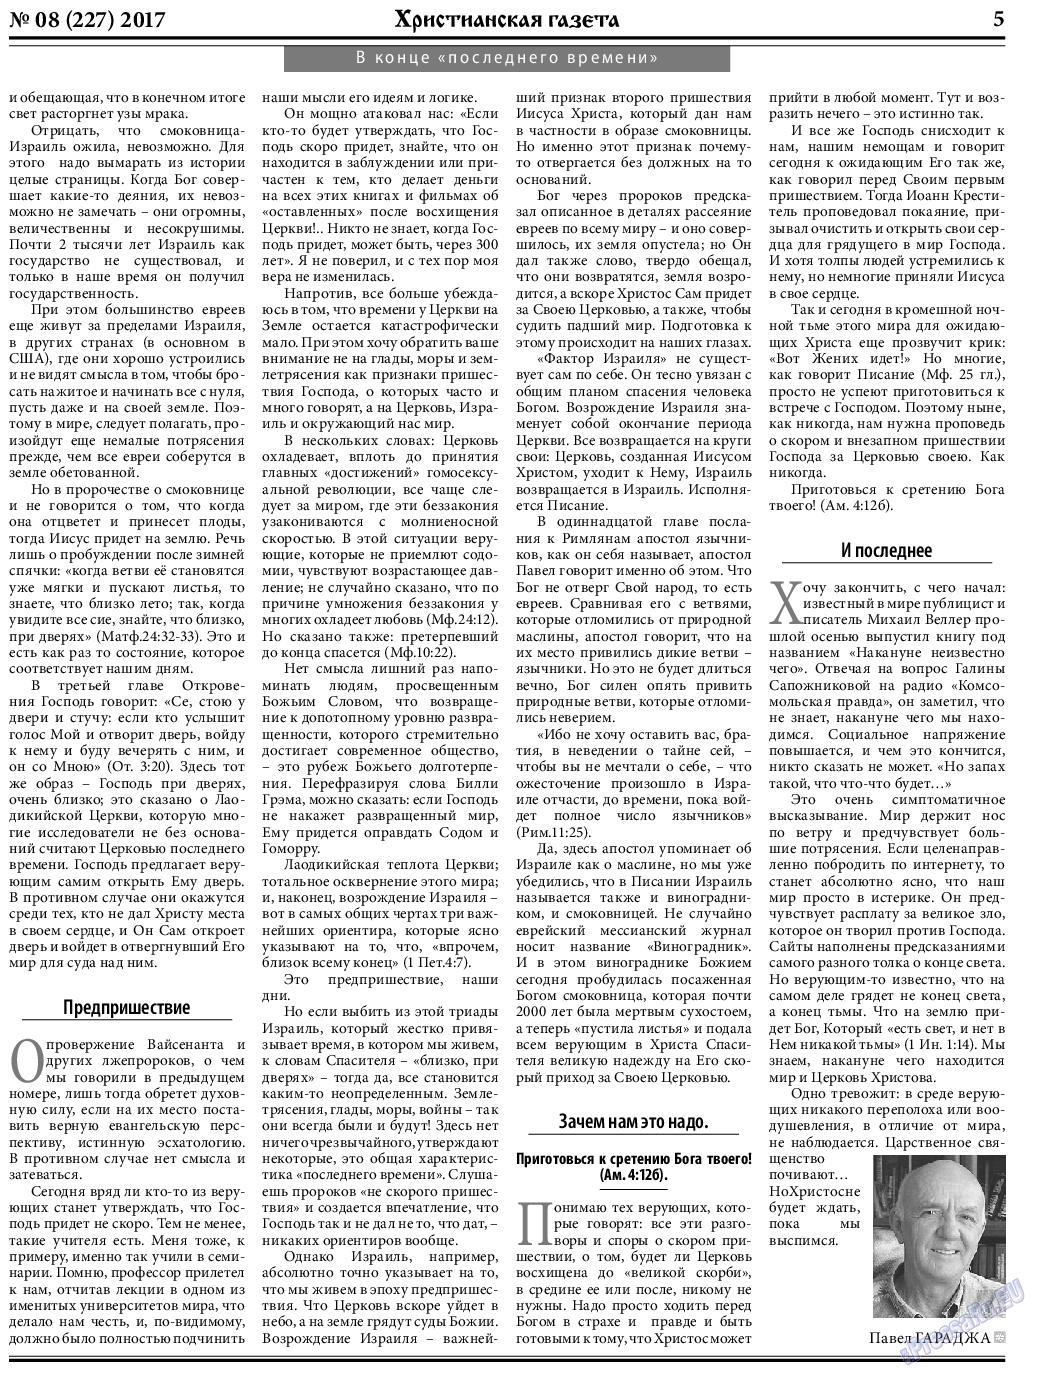 Христианская газета, газета. 2017 №8 стр.5